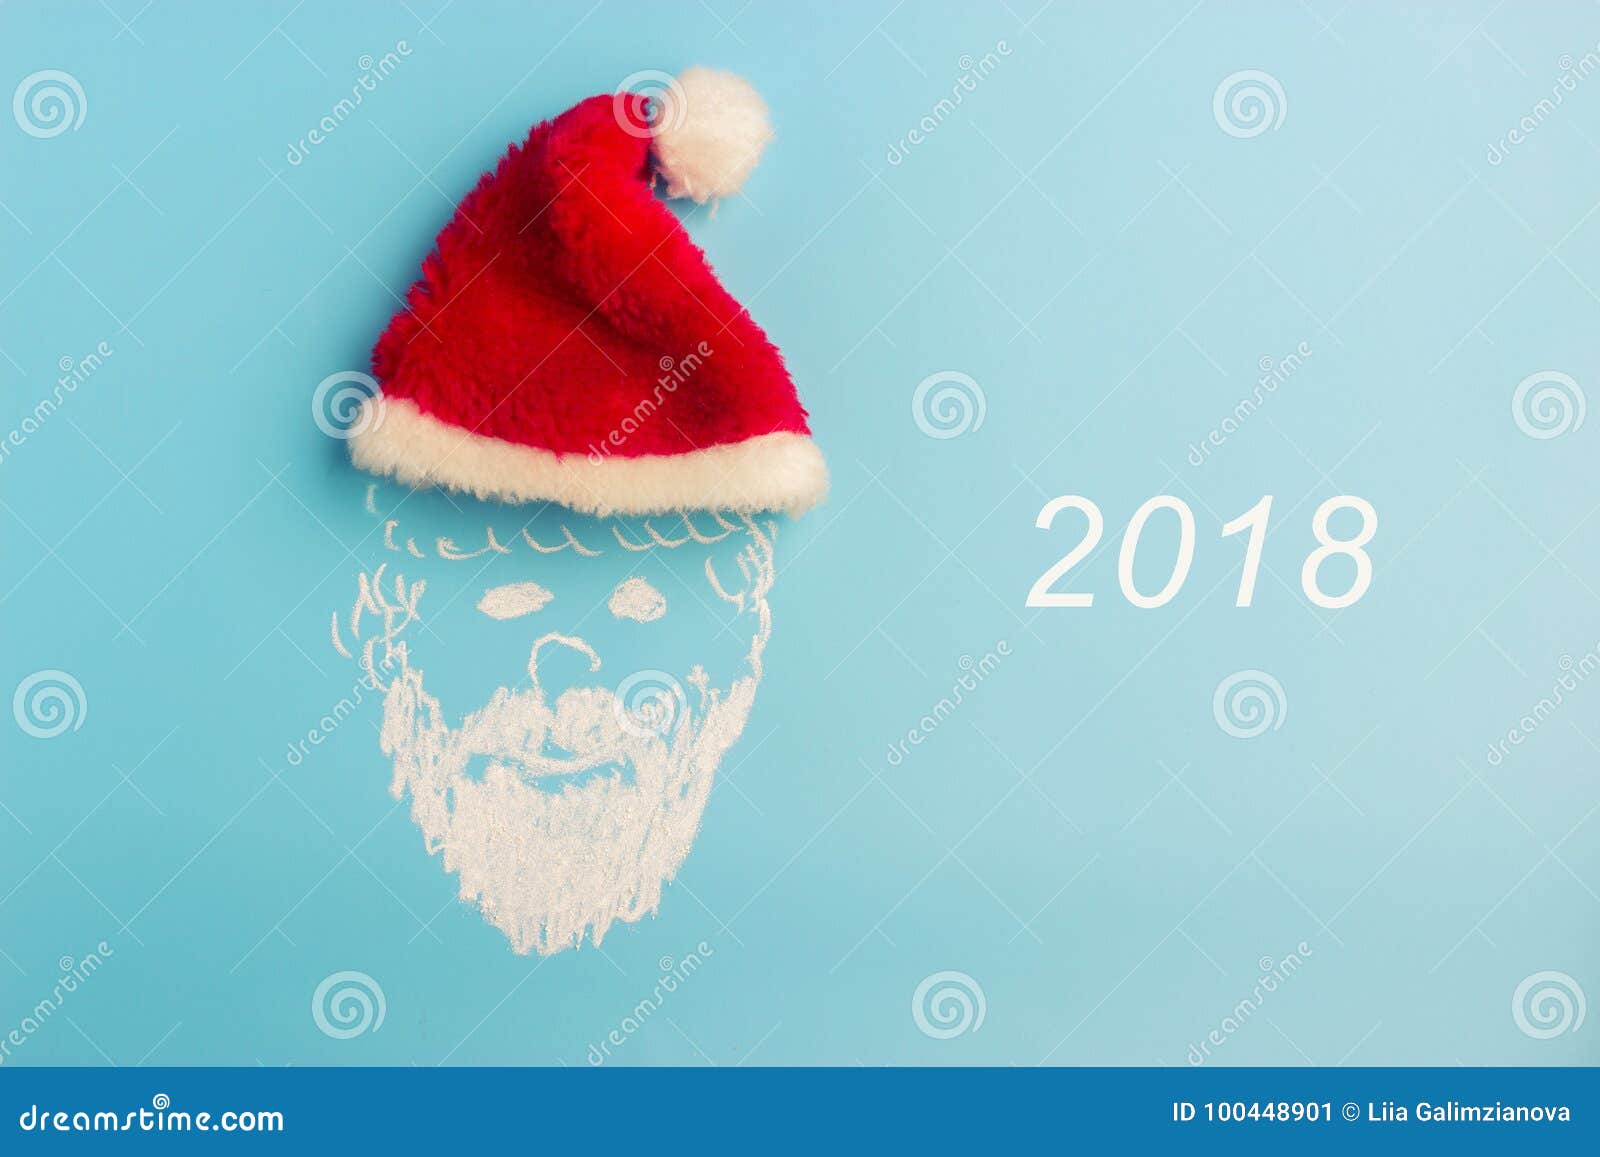 Weihnachtsmann-und Weihnachtsbaum. Weihnachtsmann-Illustration mit wirklicher roter Kappe